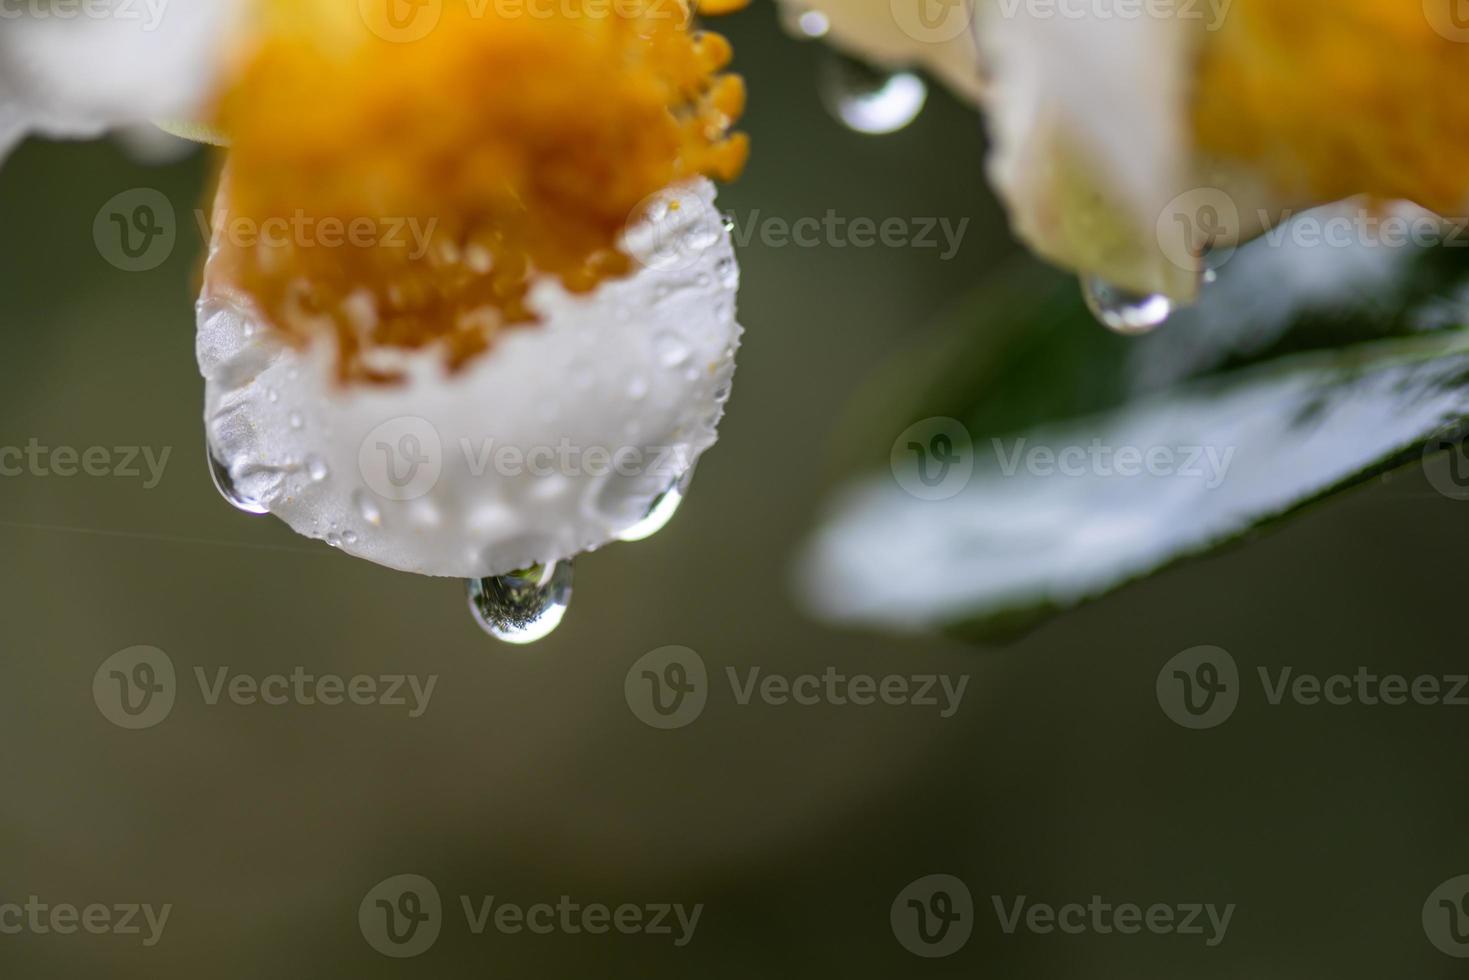 flores de árbol de té bajo la lluvia, pétalos con gotas de lluvia foto